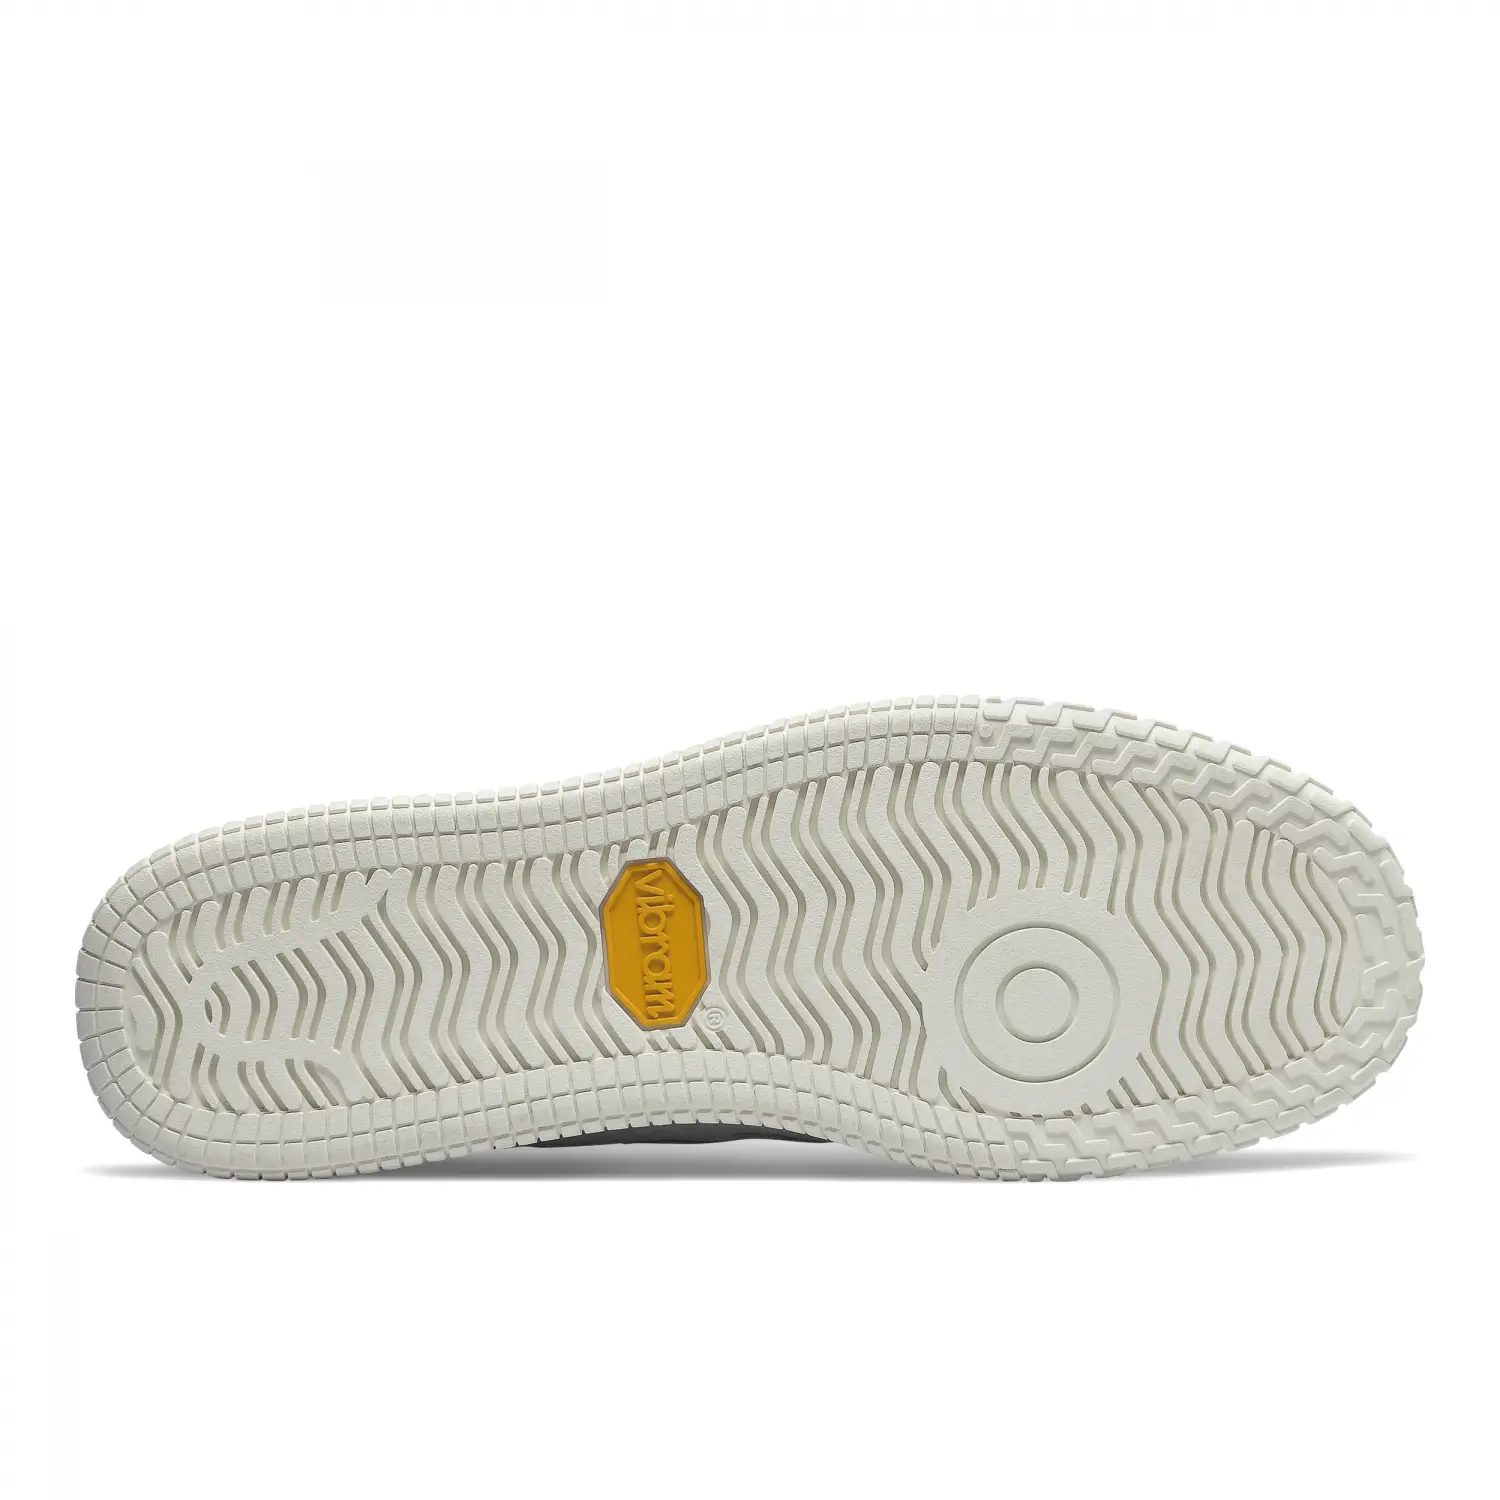 New Balance Lifestyle Unisex Shoes Beyaz Unisex Günlük Ayakkabı - CT400PLA